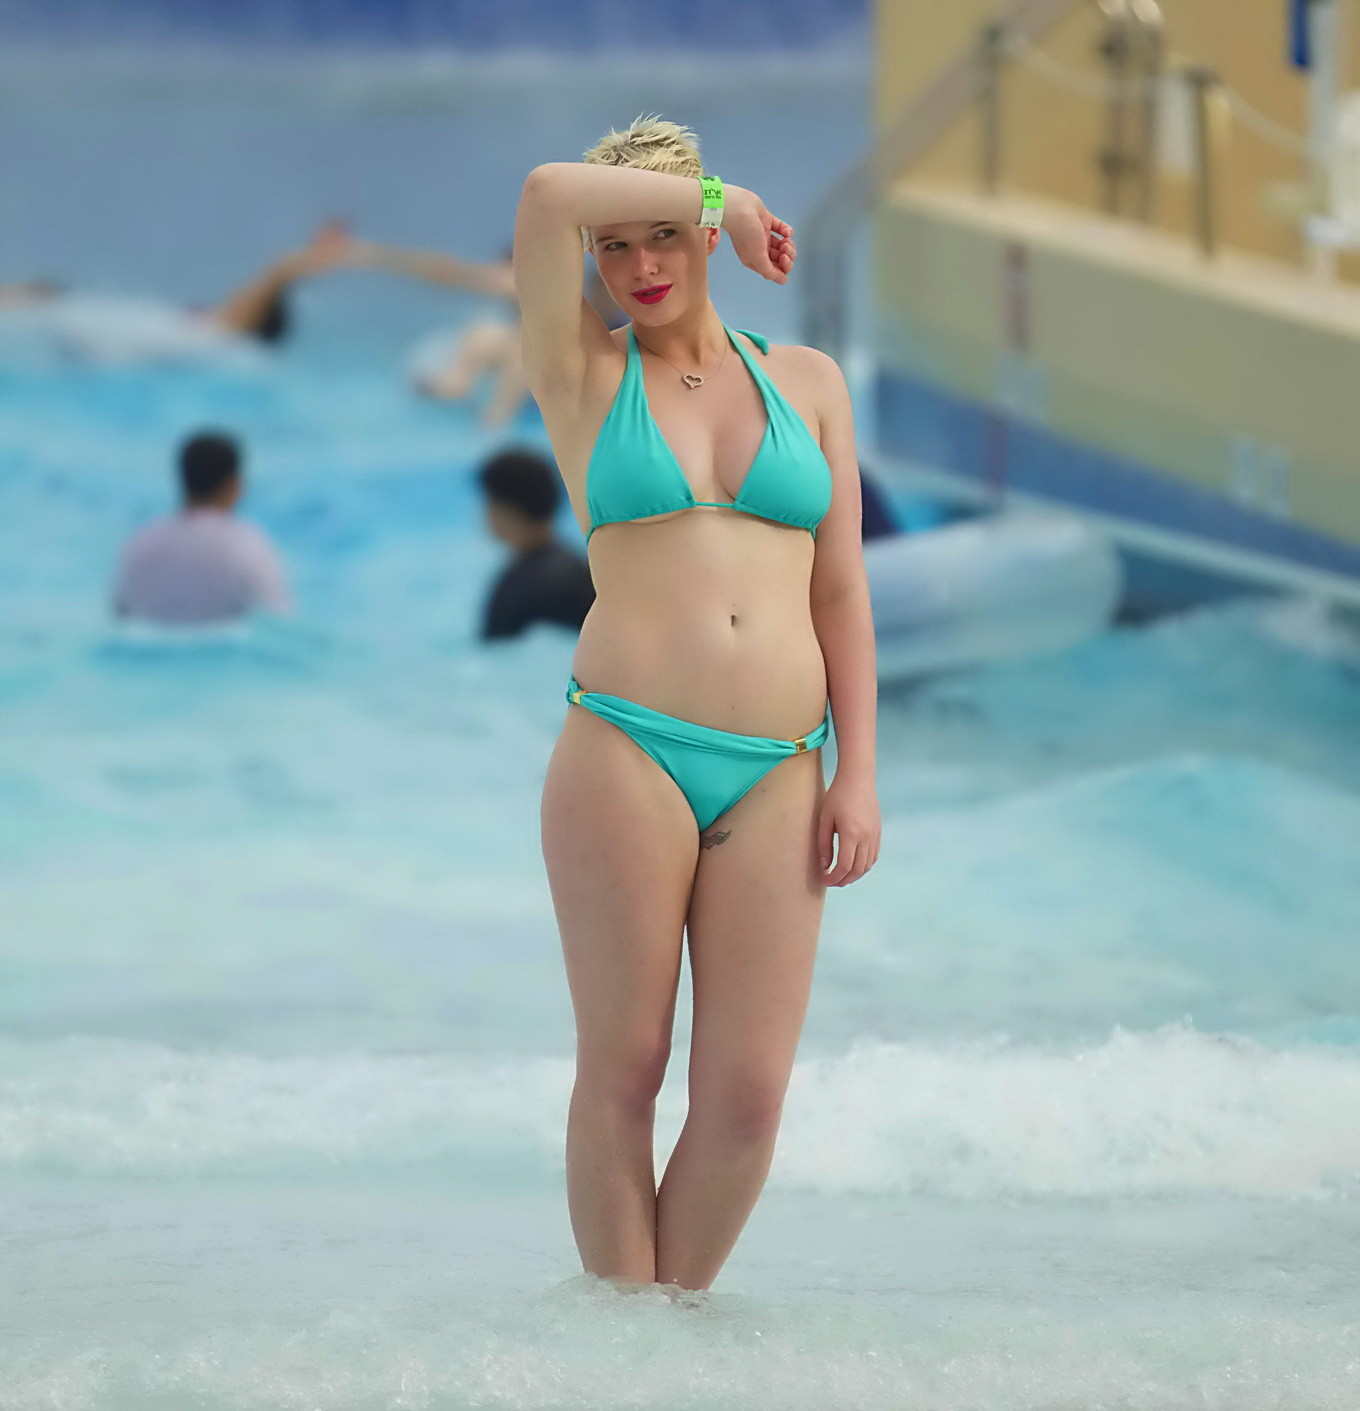 Helen flanagan trägt einen winzigen hellblauen Bikini an einem Strand in dubai
 #75236381